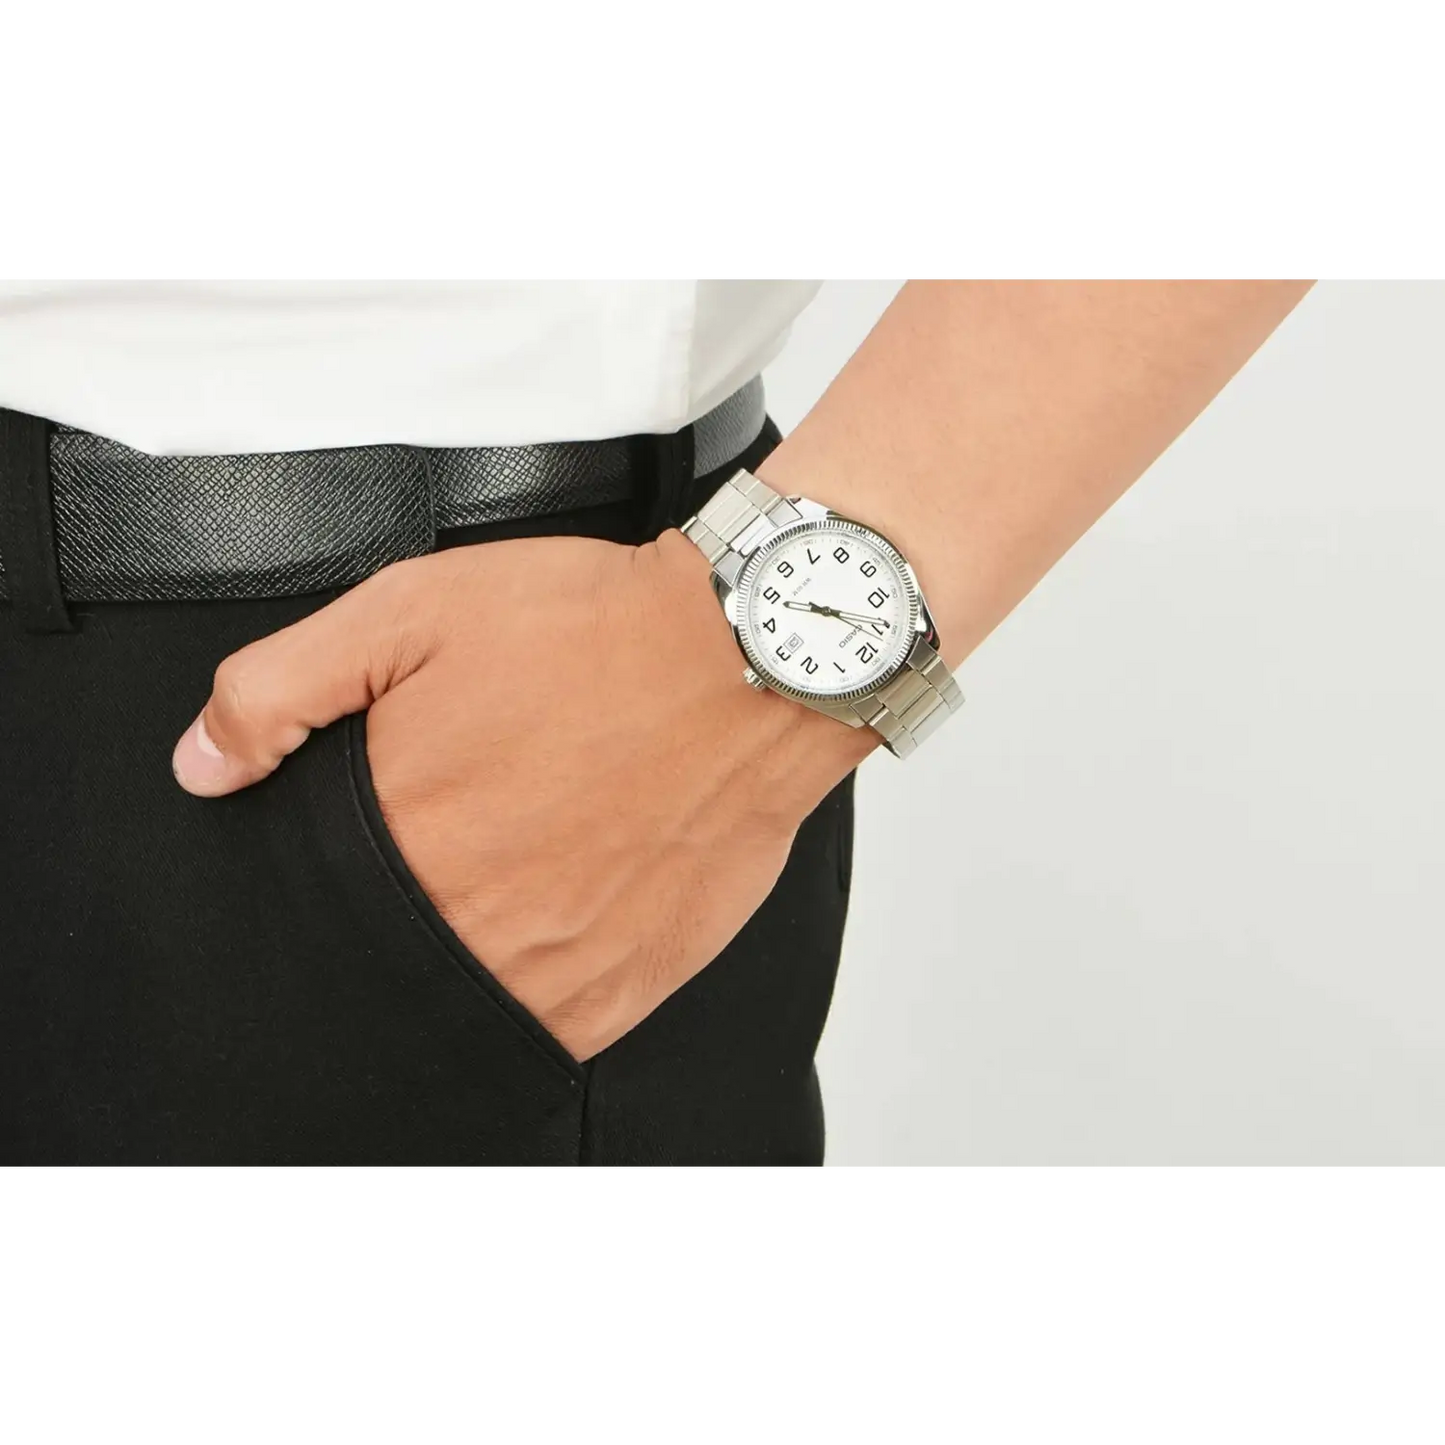 Casio Men’s General Quartz White Dial Stainless Steel Watch